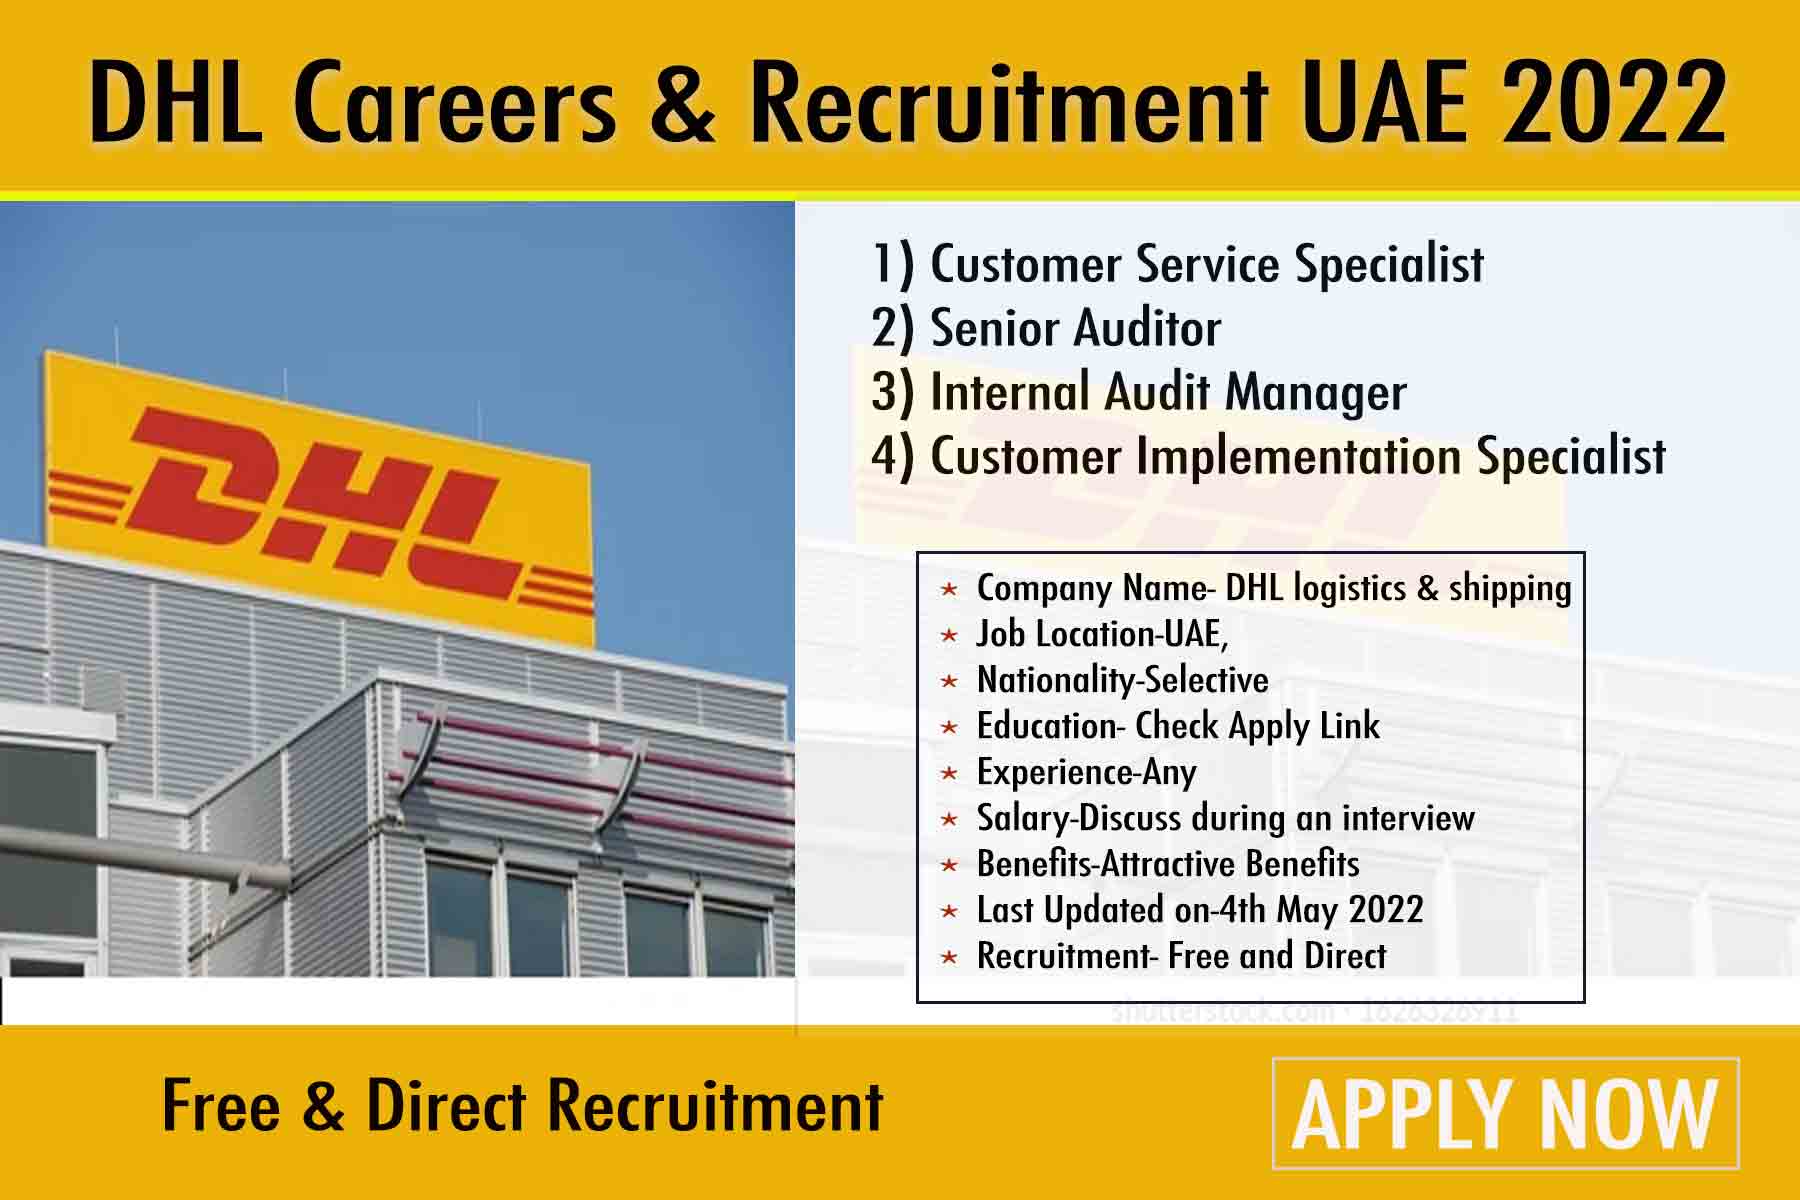 DHL Career UAE Recruitment in 2022 